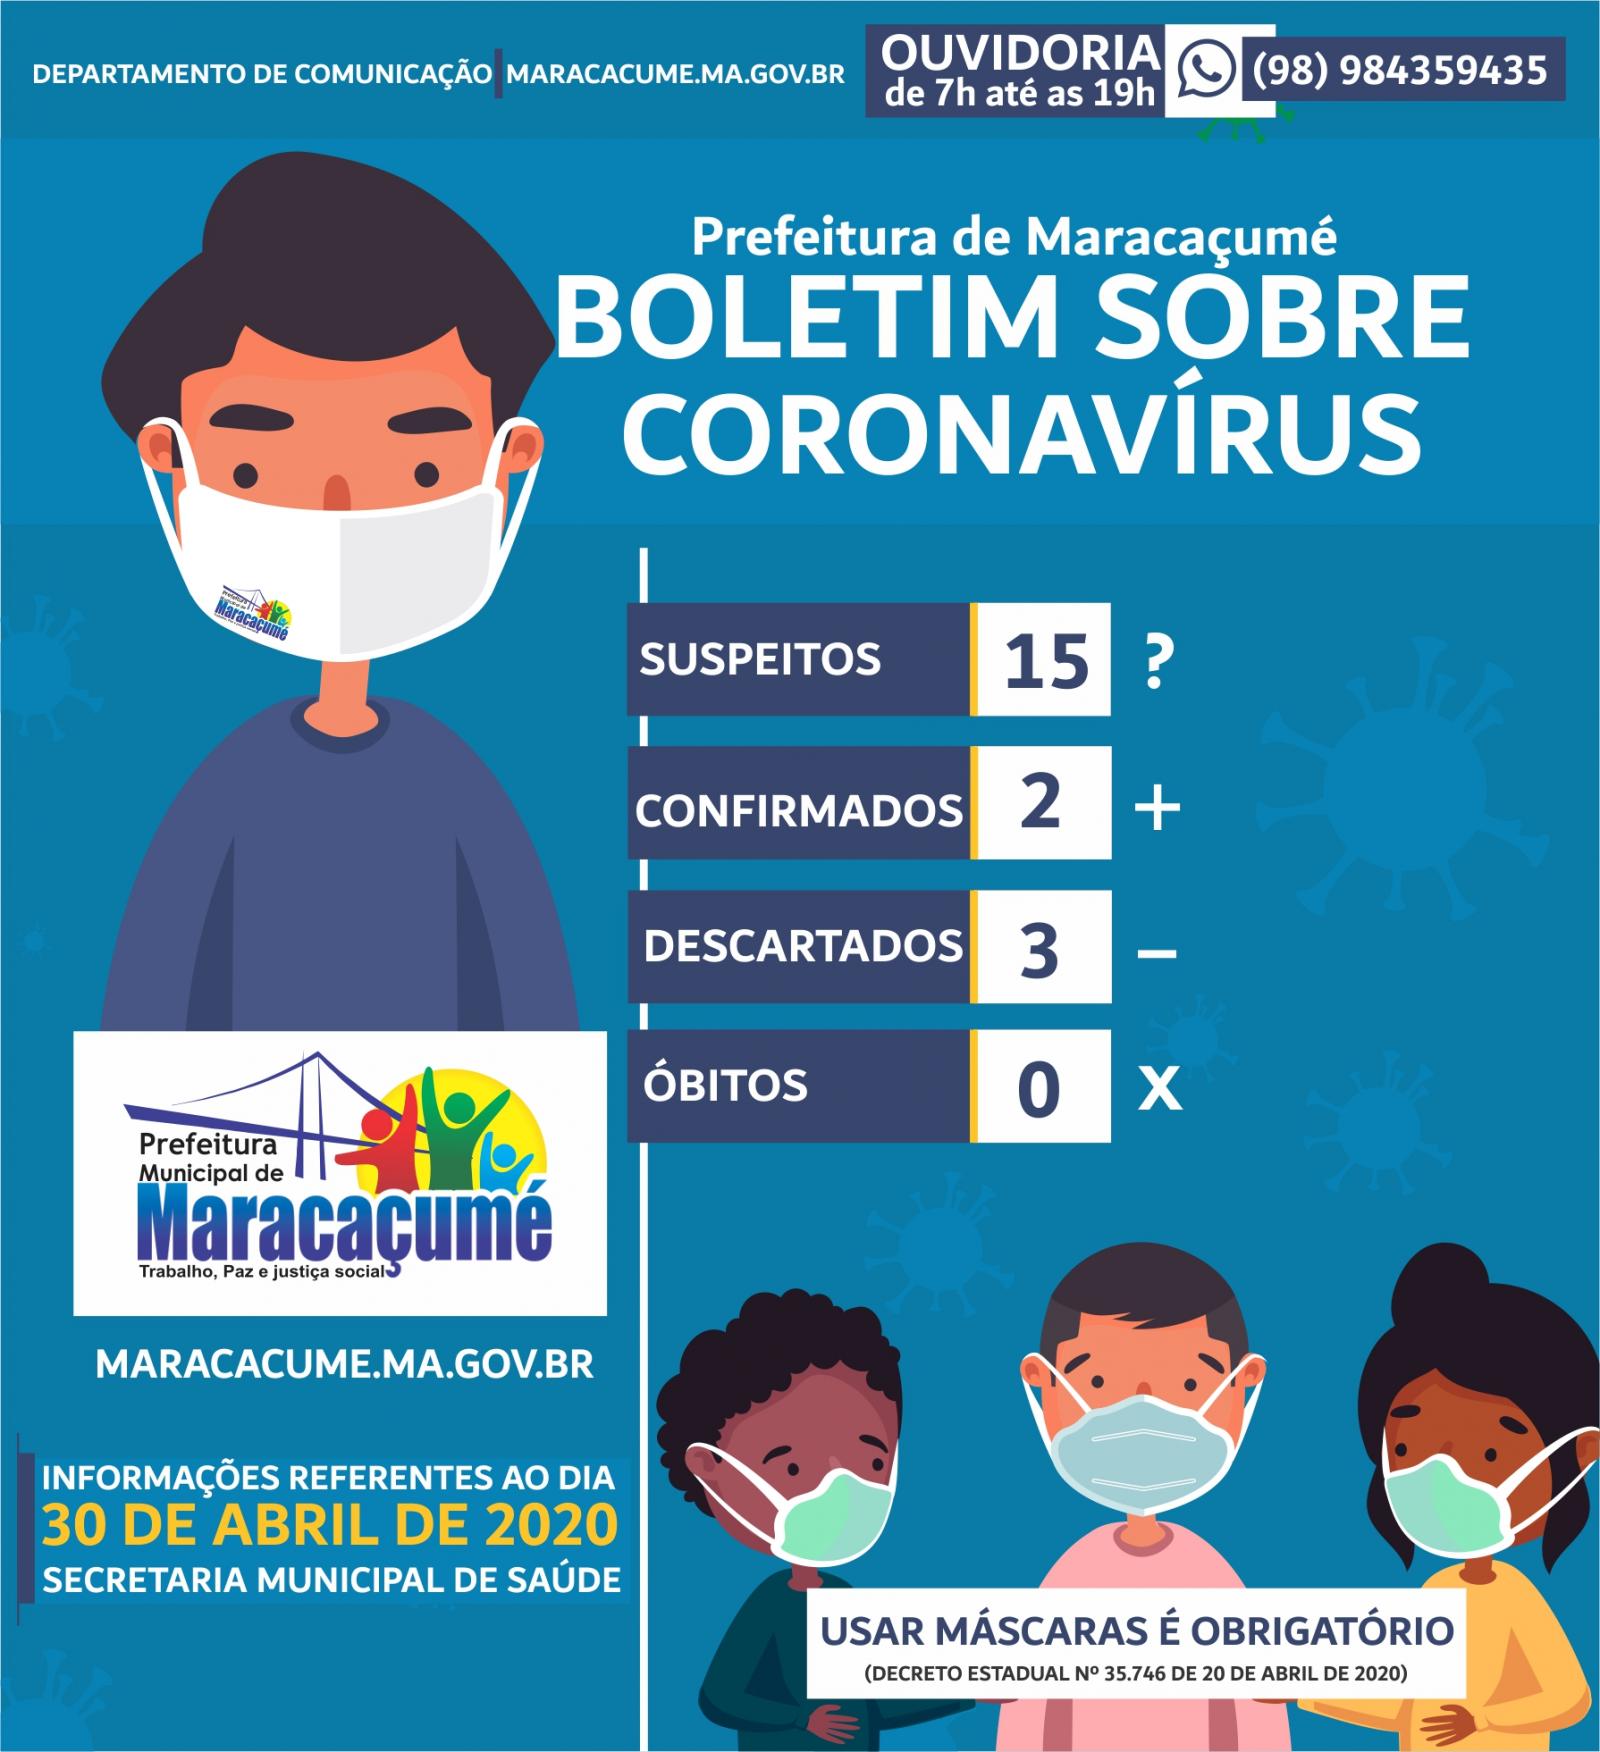 Sobe para 2 o número de casos confirmados do novo coronavírus em Maracaçumé